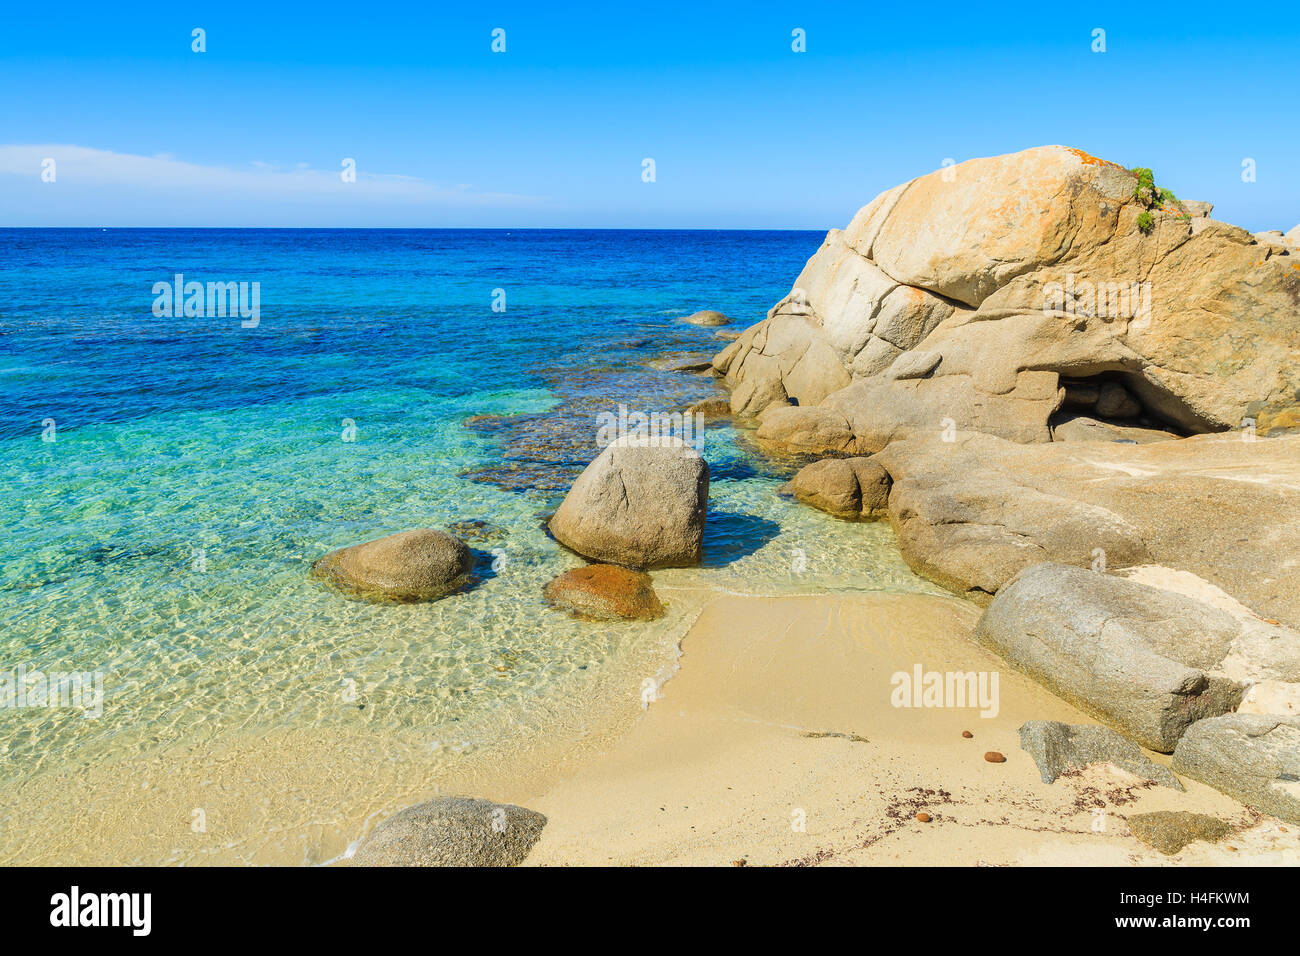 Vue sur Cala Caterina plage et mer turquoise, l'île de Sardaigne, Italie Banque D'Images